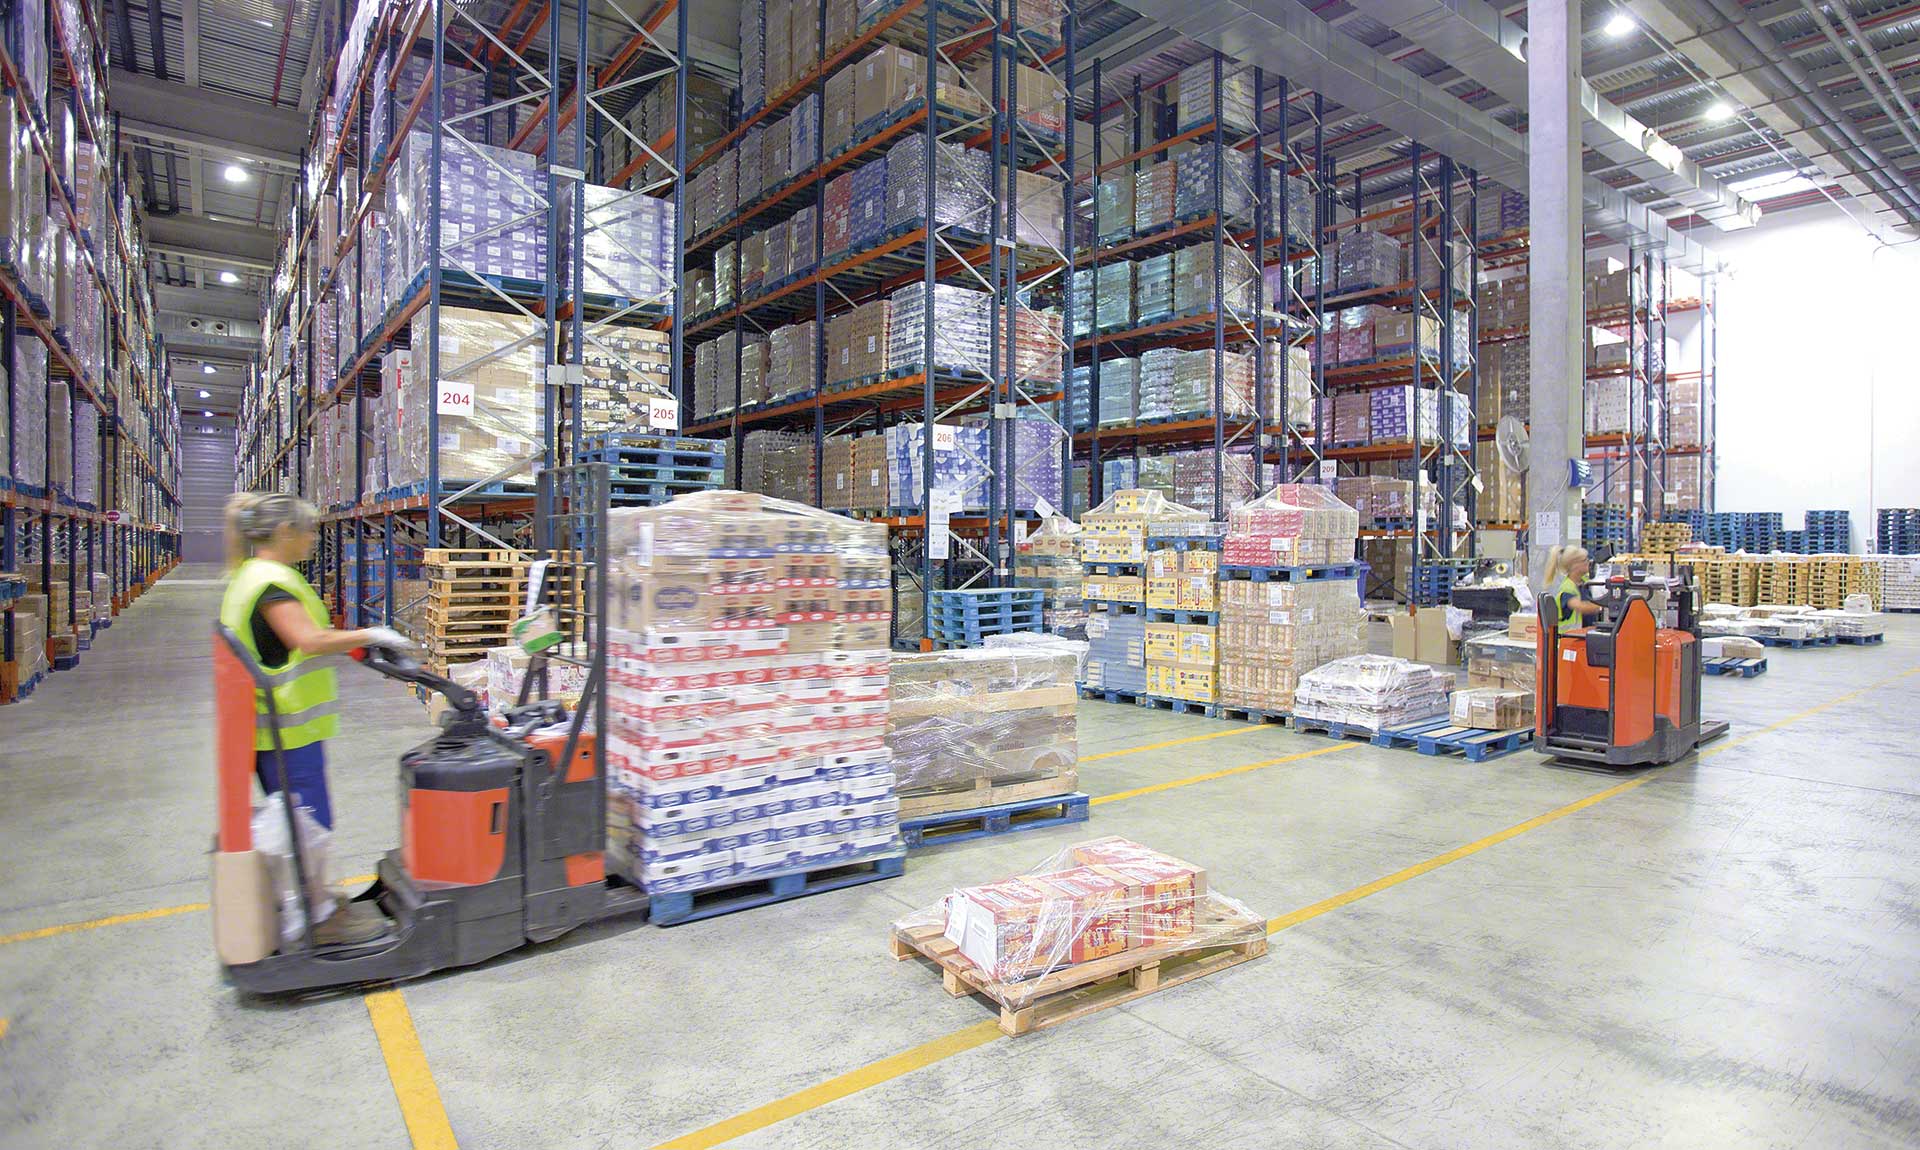 Um armazém de consolidação é uma instalação de logística que agrupa pedidos individuais em envios de maior tamanho